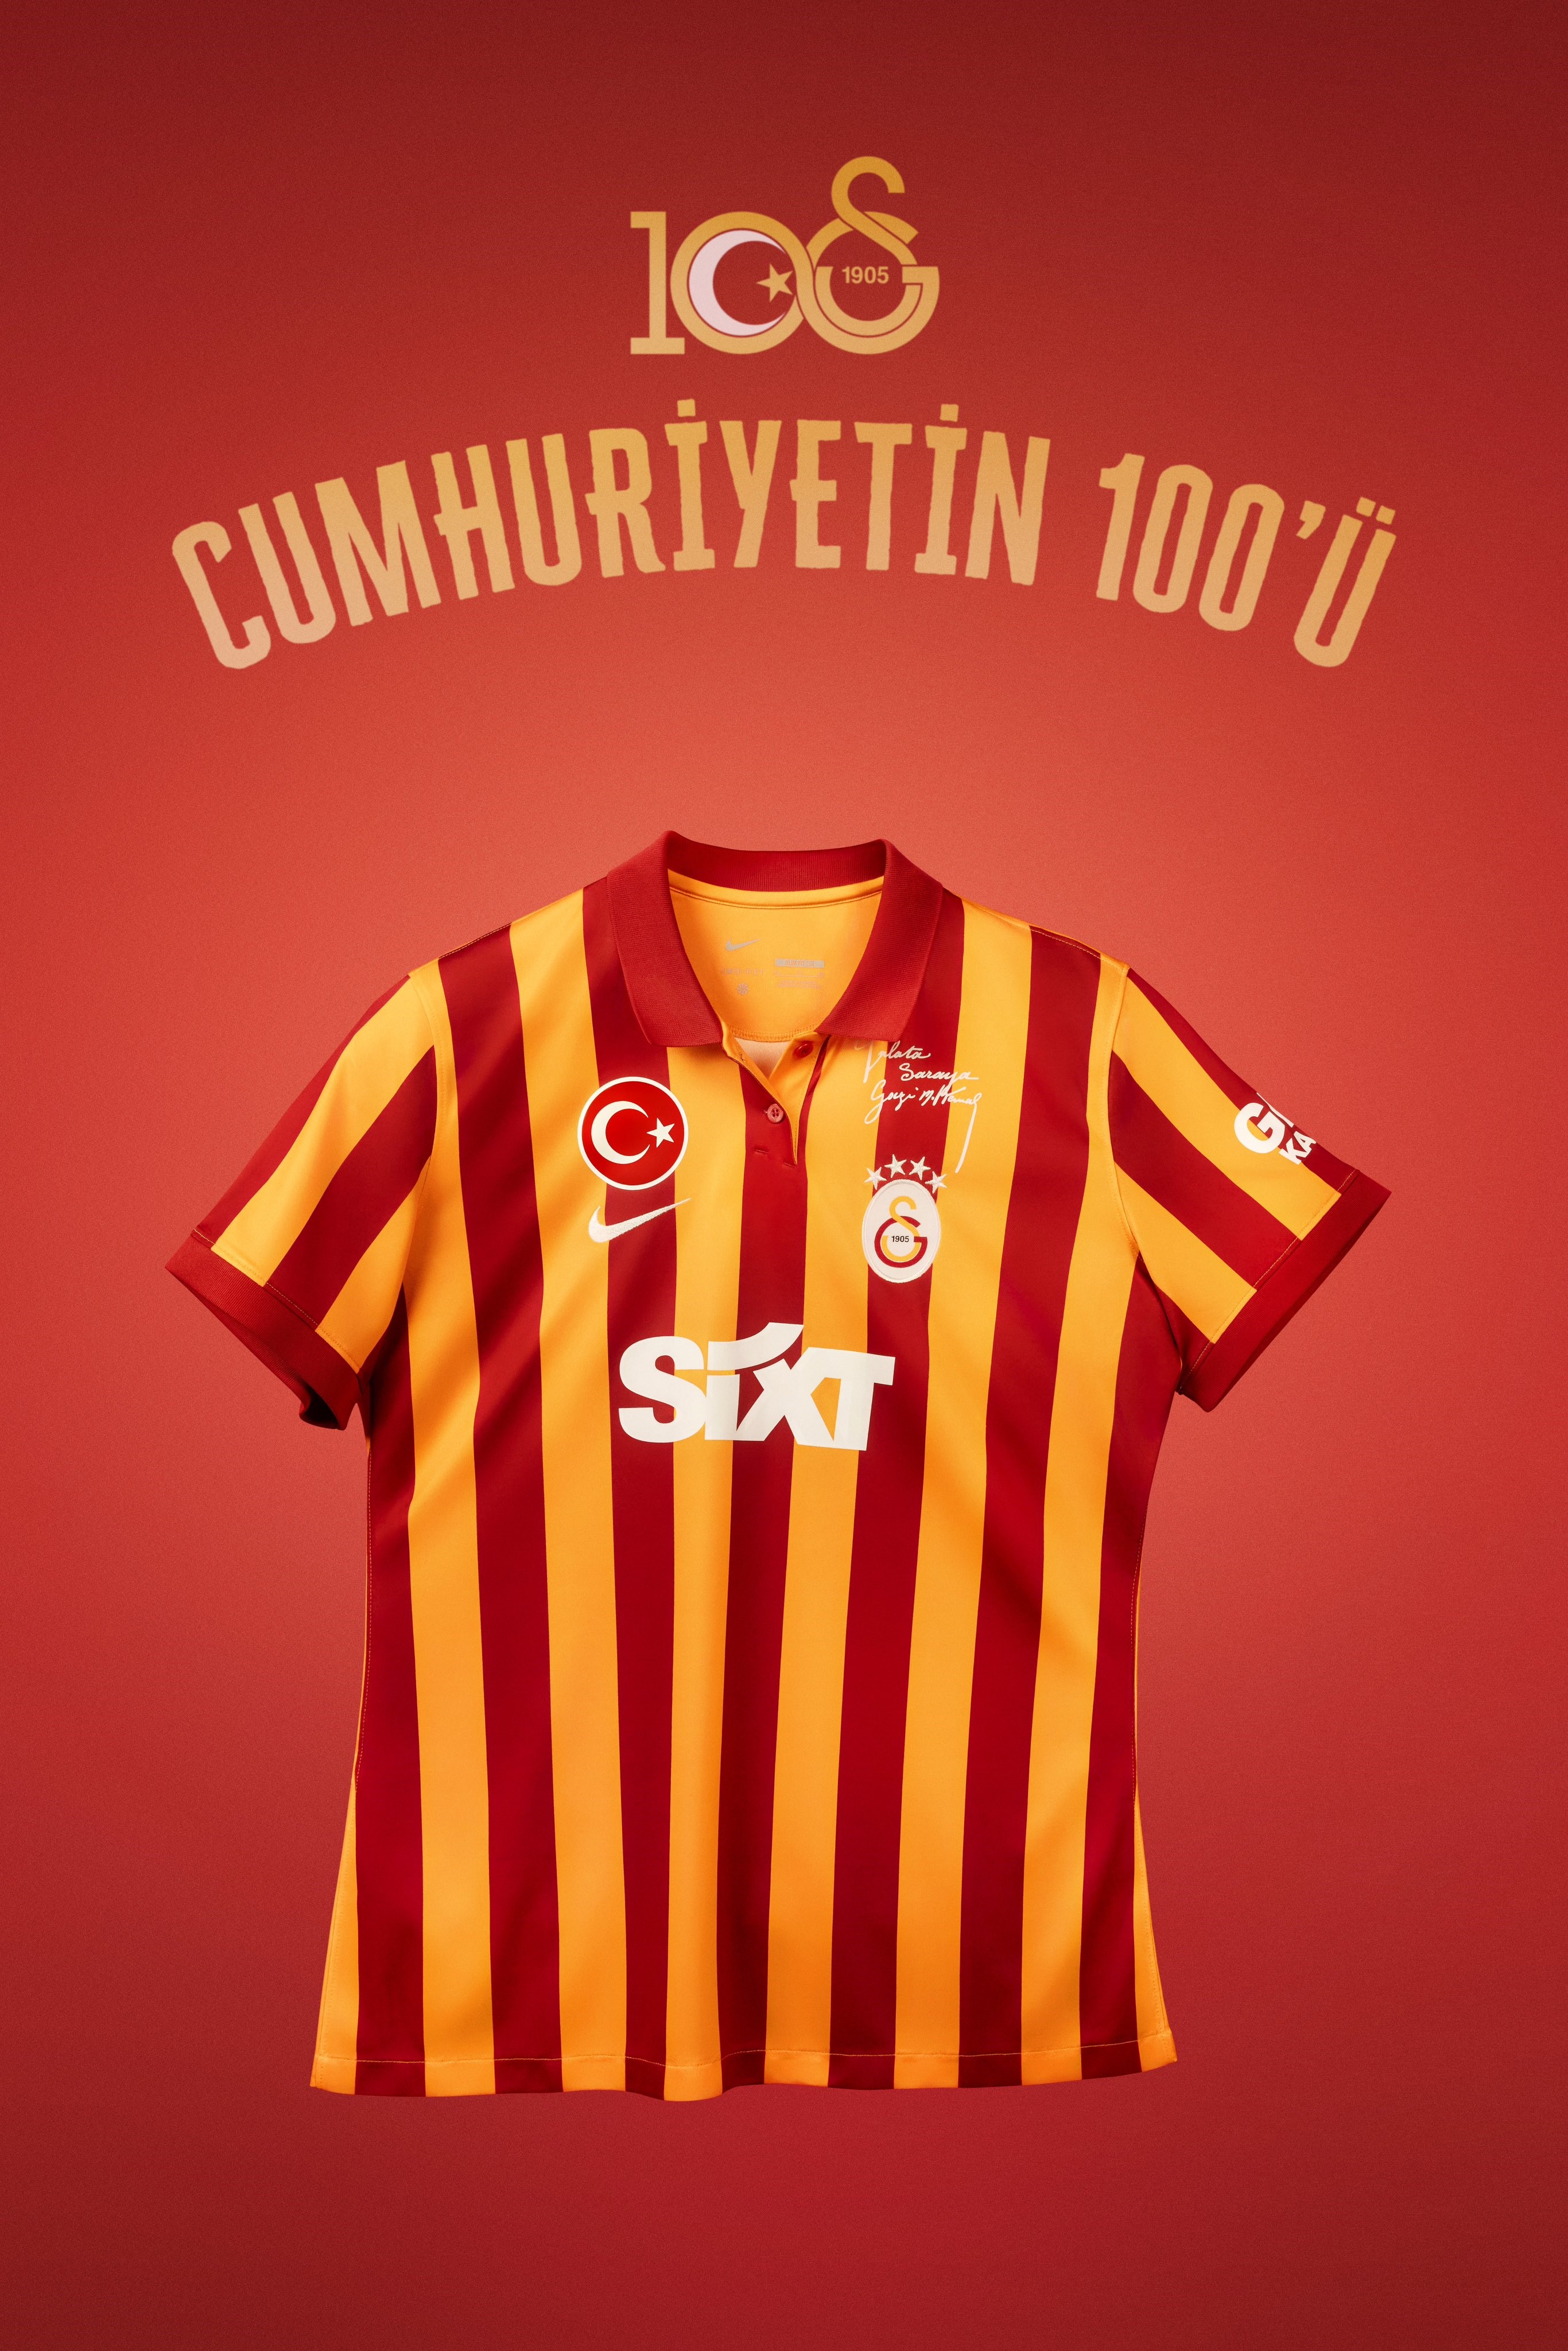 Galatasaray’dan, Cumhuriyet’in 100. yılına özel forma